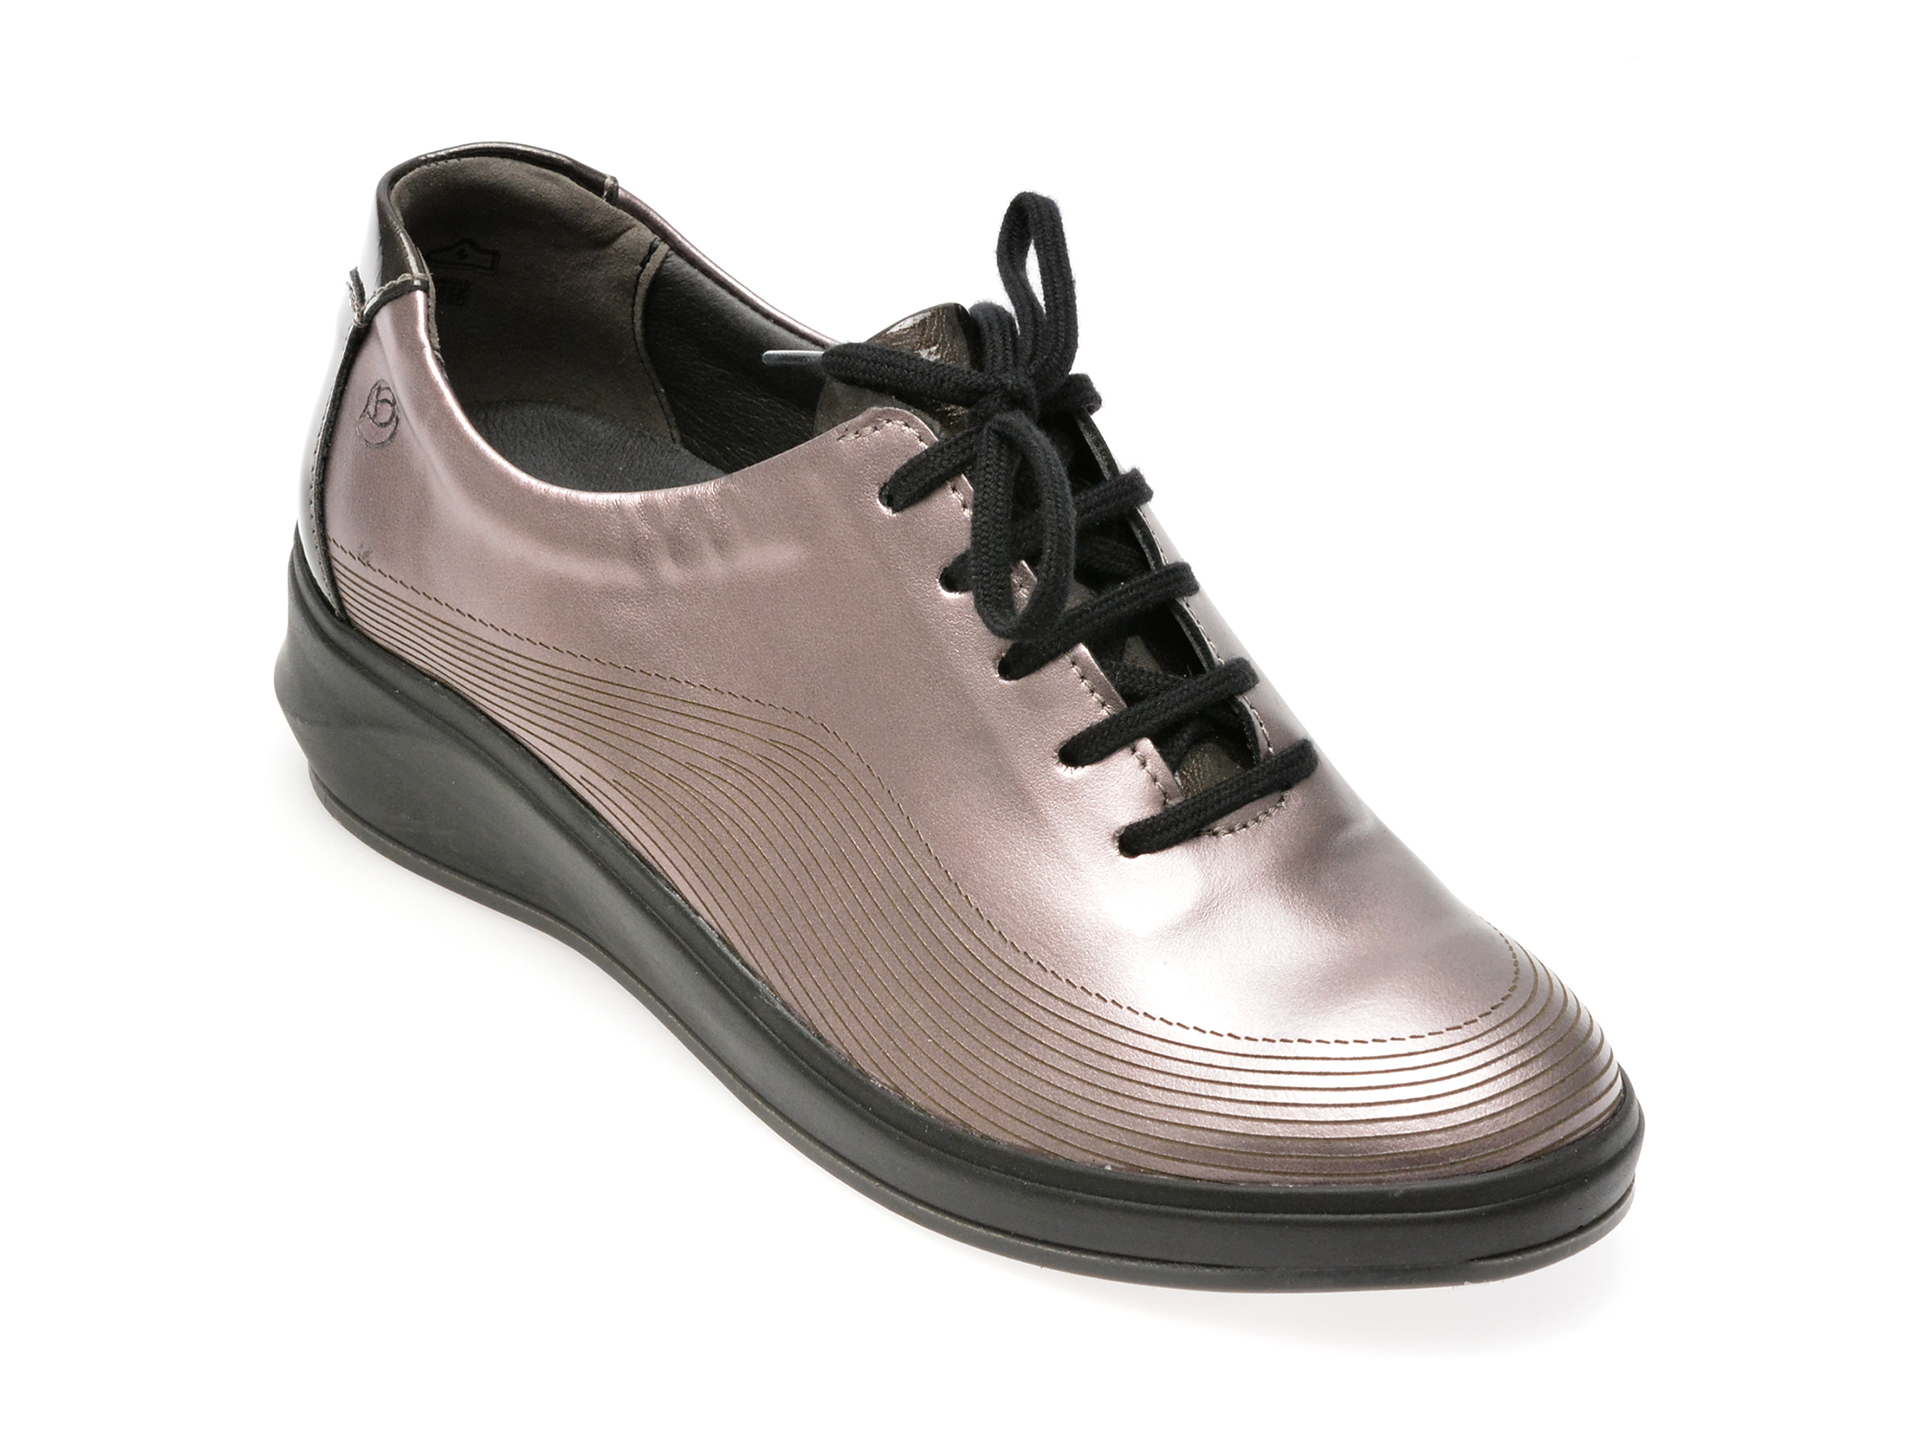 Pantofi SUAVE gri, 13013GT, din piele naturala